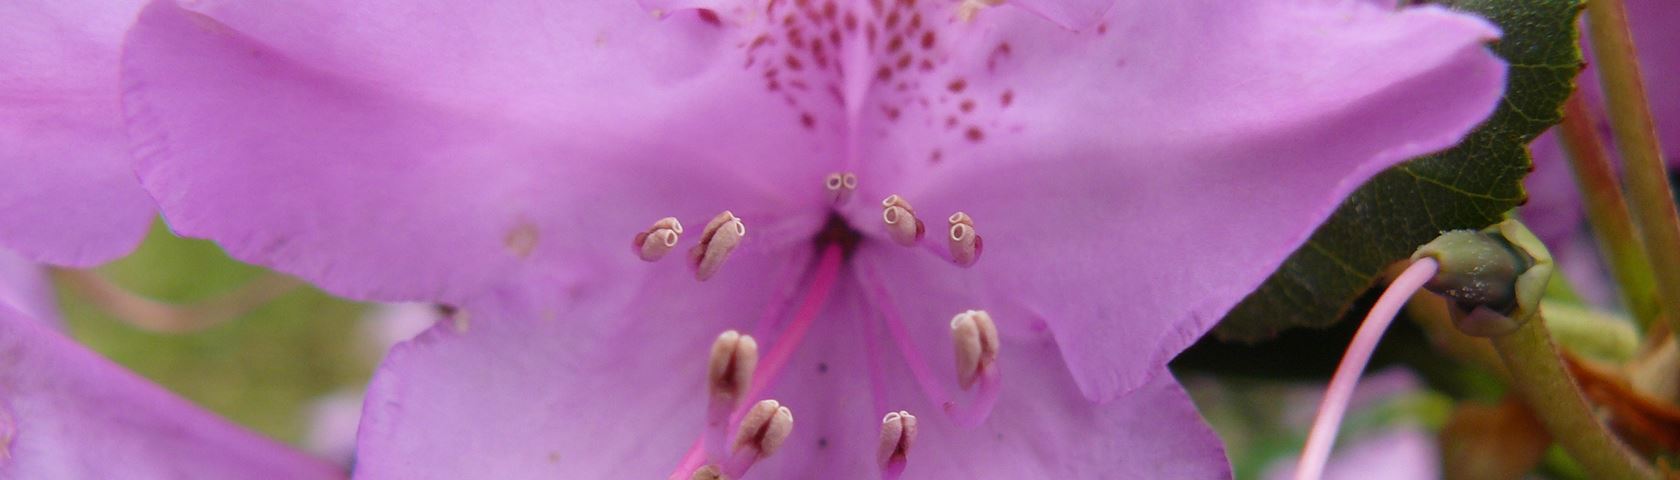 Pale Purple Flower